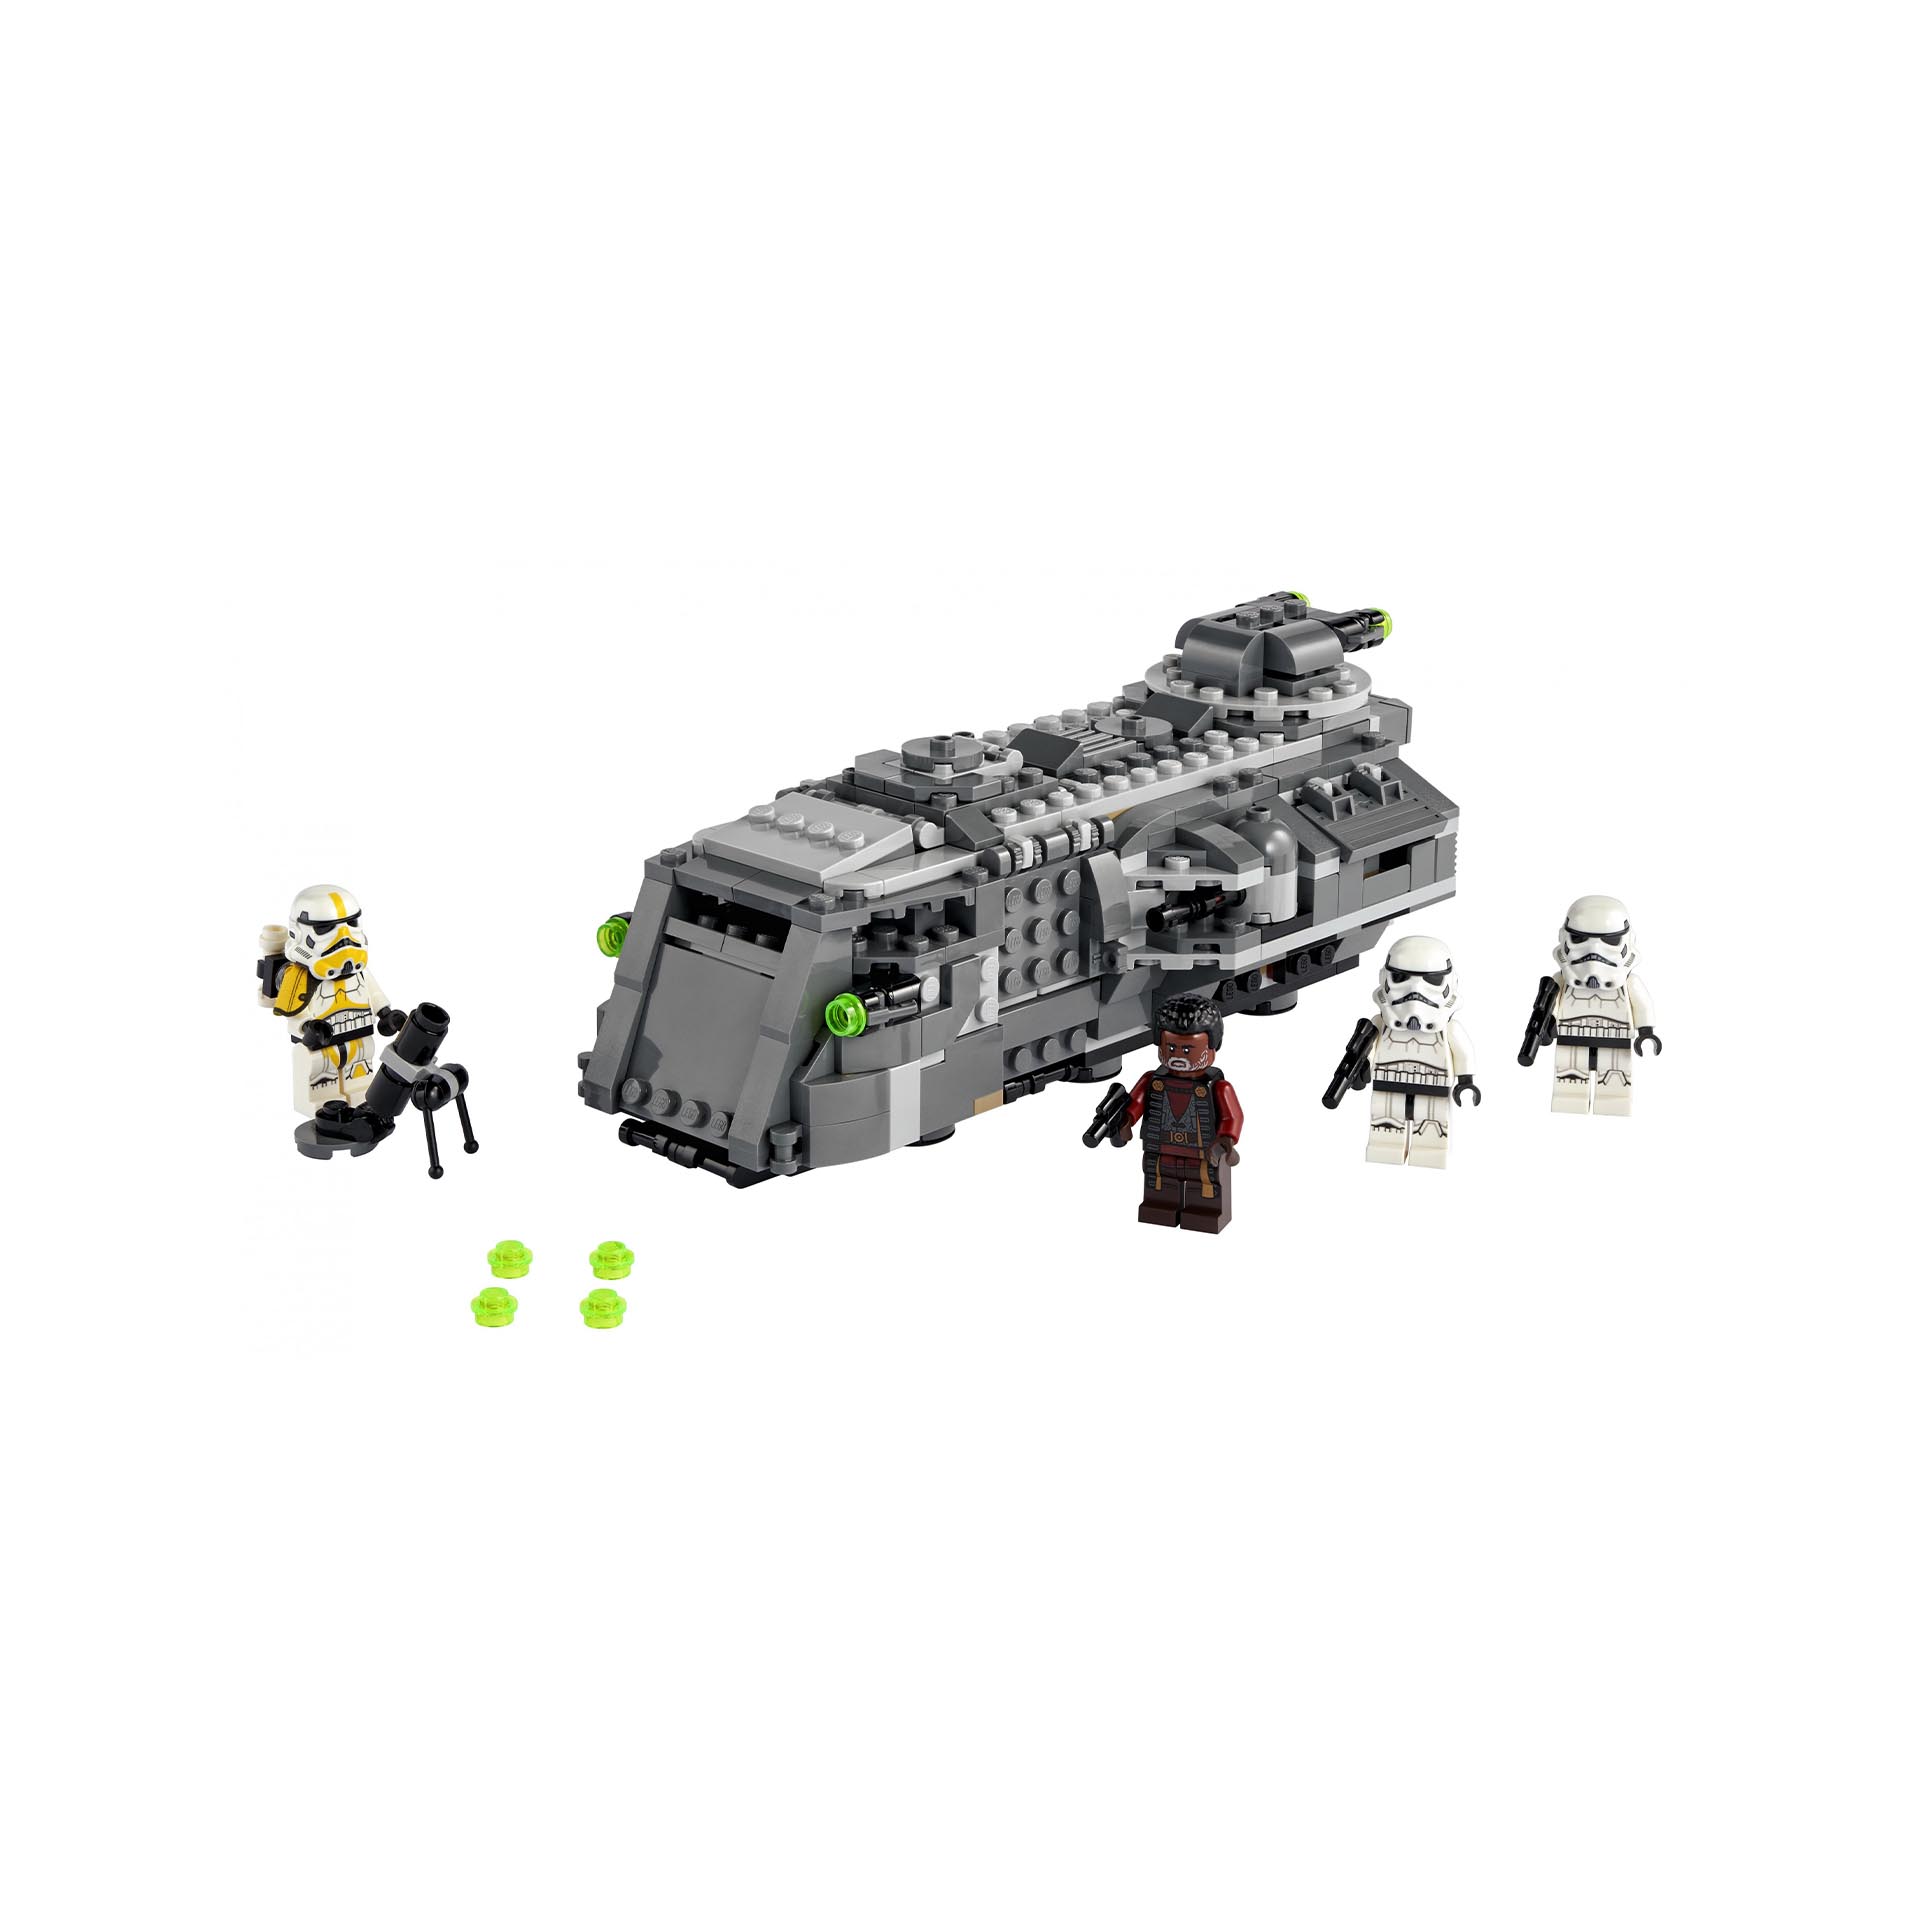 LEGO Star Wars Marauder Corazzato Imperiale, Set da Costruzione con 4 Personaggi 75311, , large